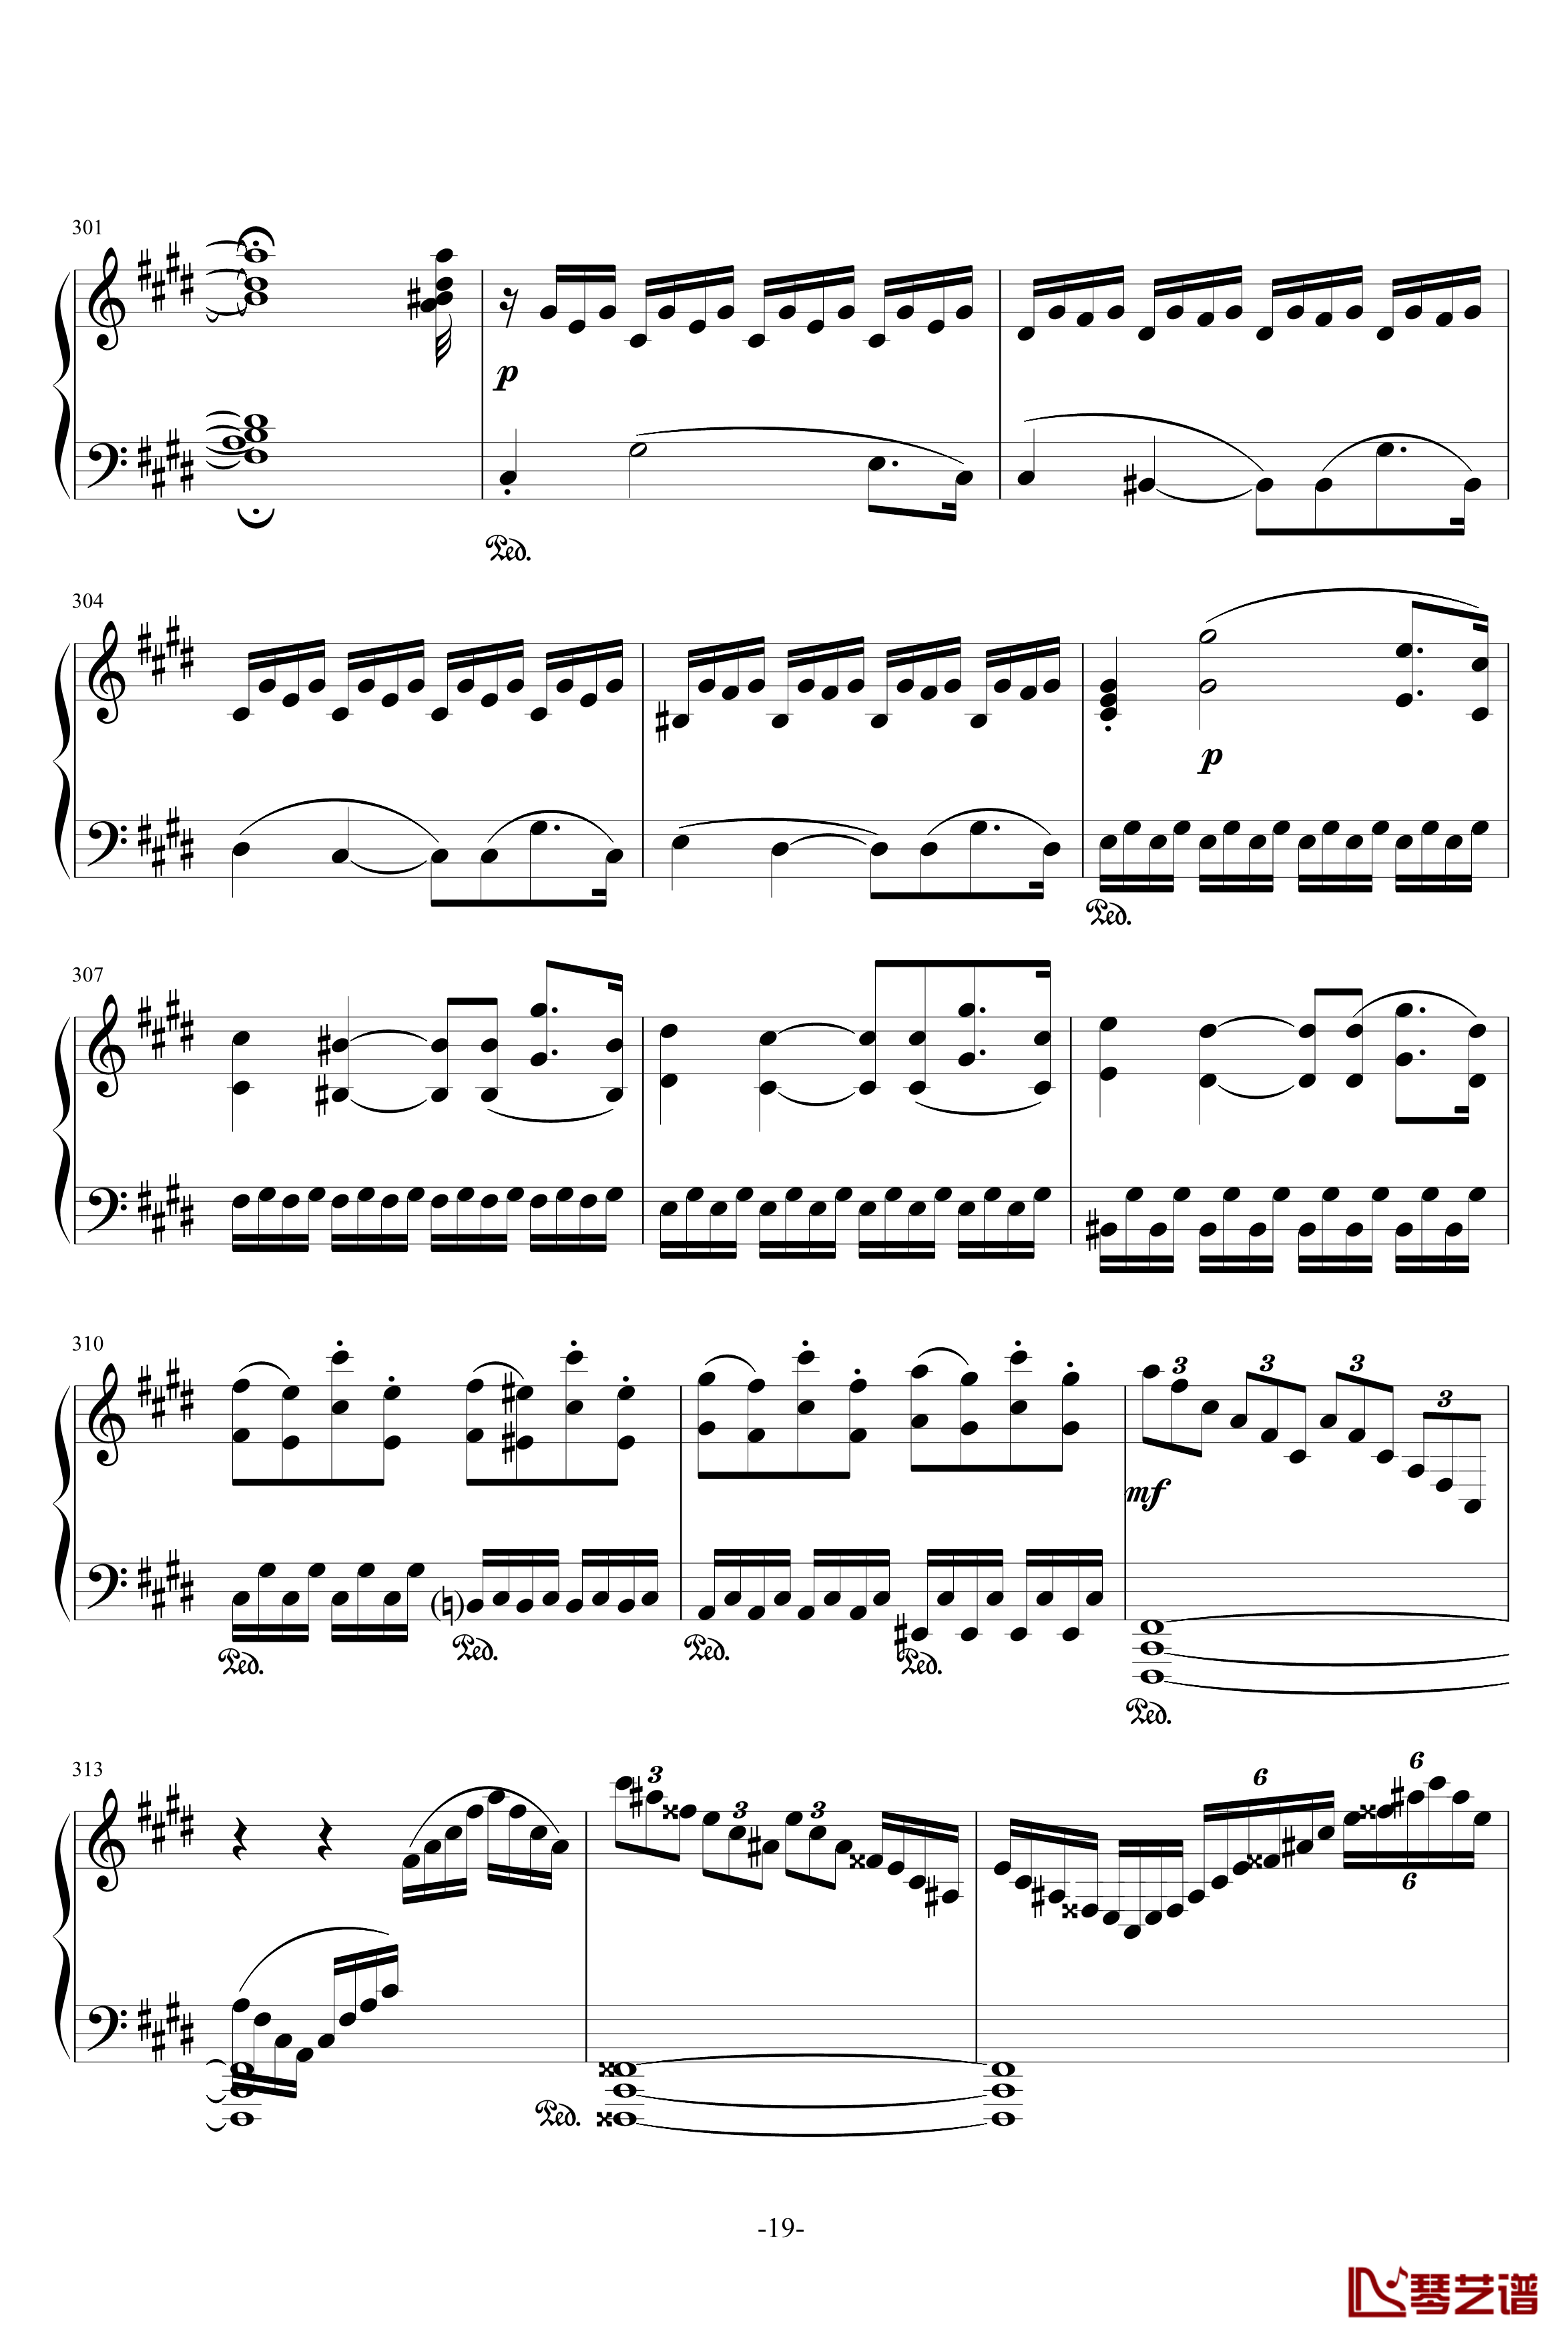 月光奏鸣曲钢琴谱-1，2，3乐章-贝多芬-beethoven19